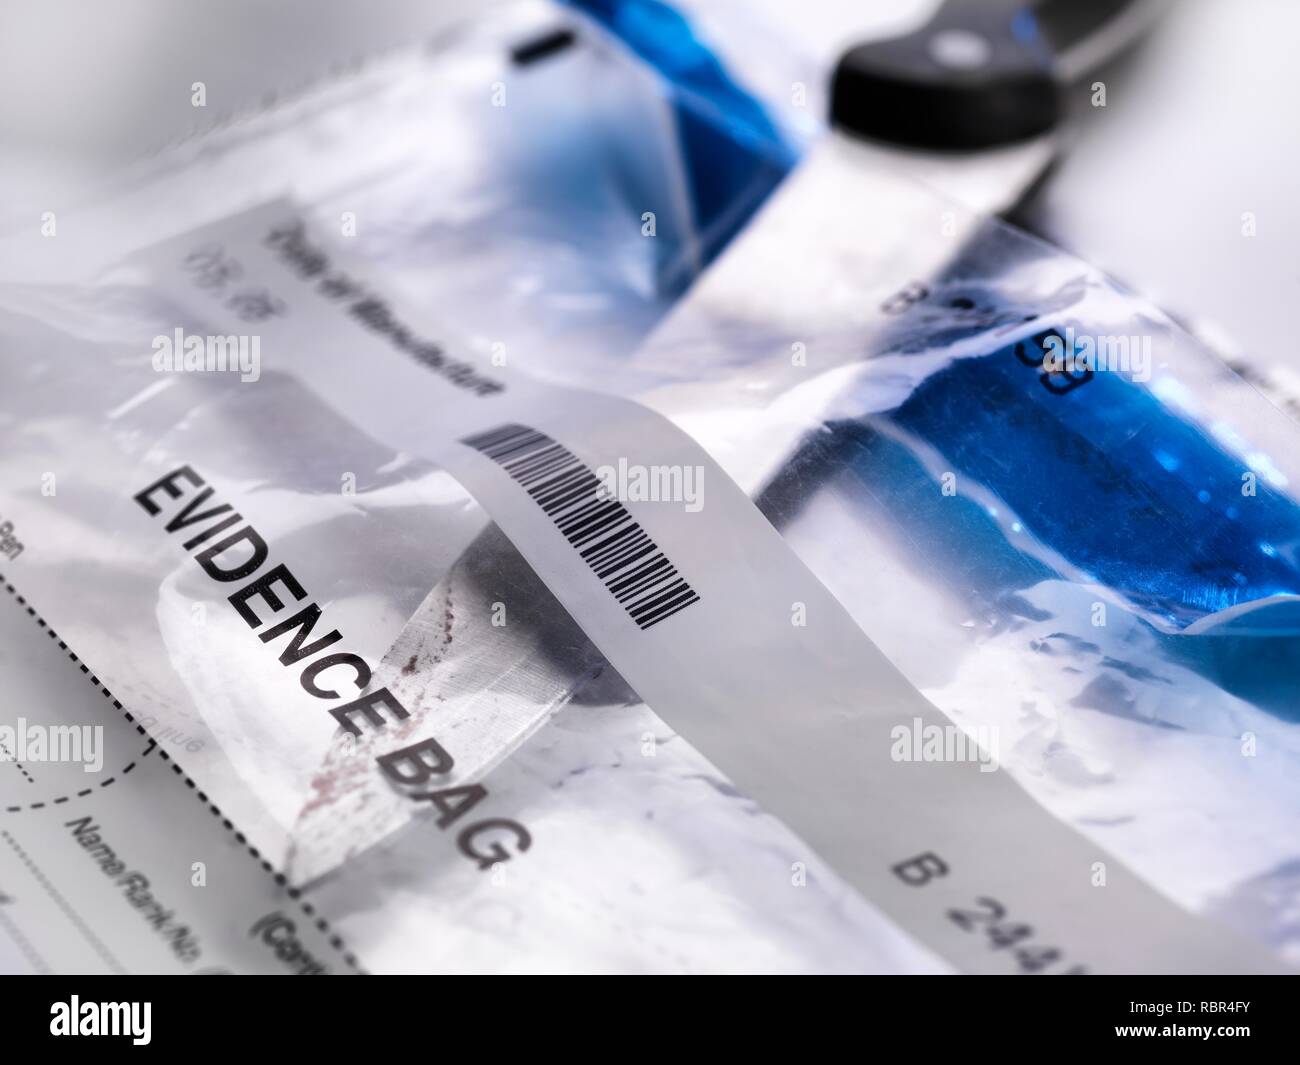 La collecte des preuves médico-légales. Un couteau sur le point d'être écouvillonnées pour l'ADN (acide désoxyribonucléique) et d'autres tests de médecine légale. Banque D'Images